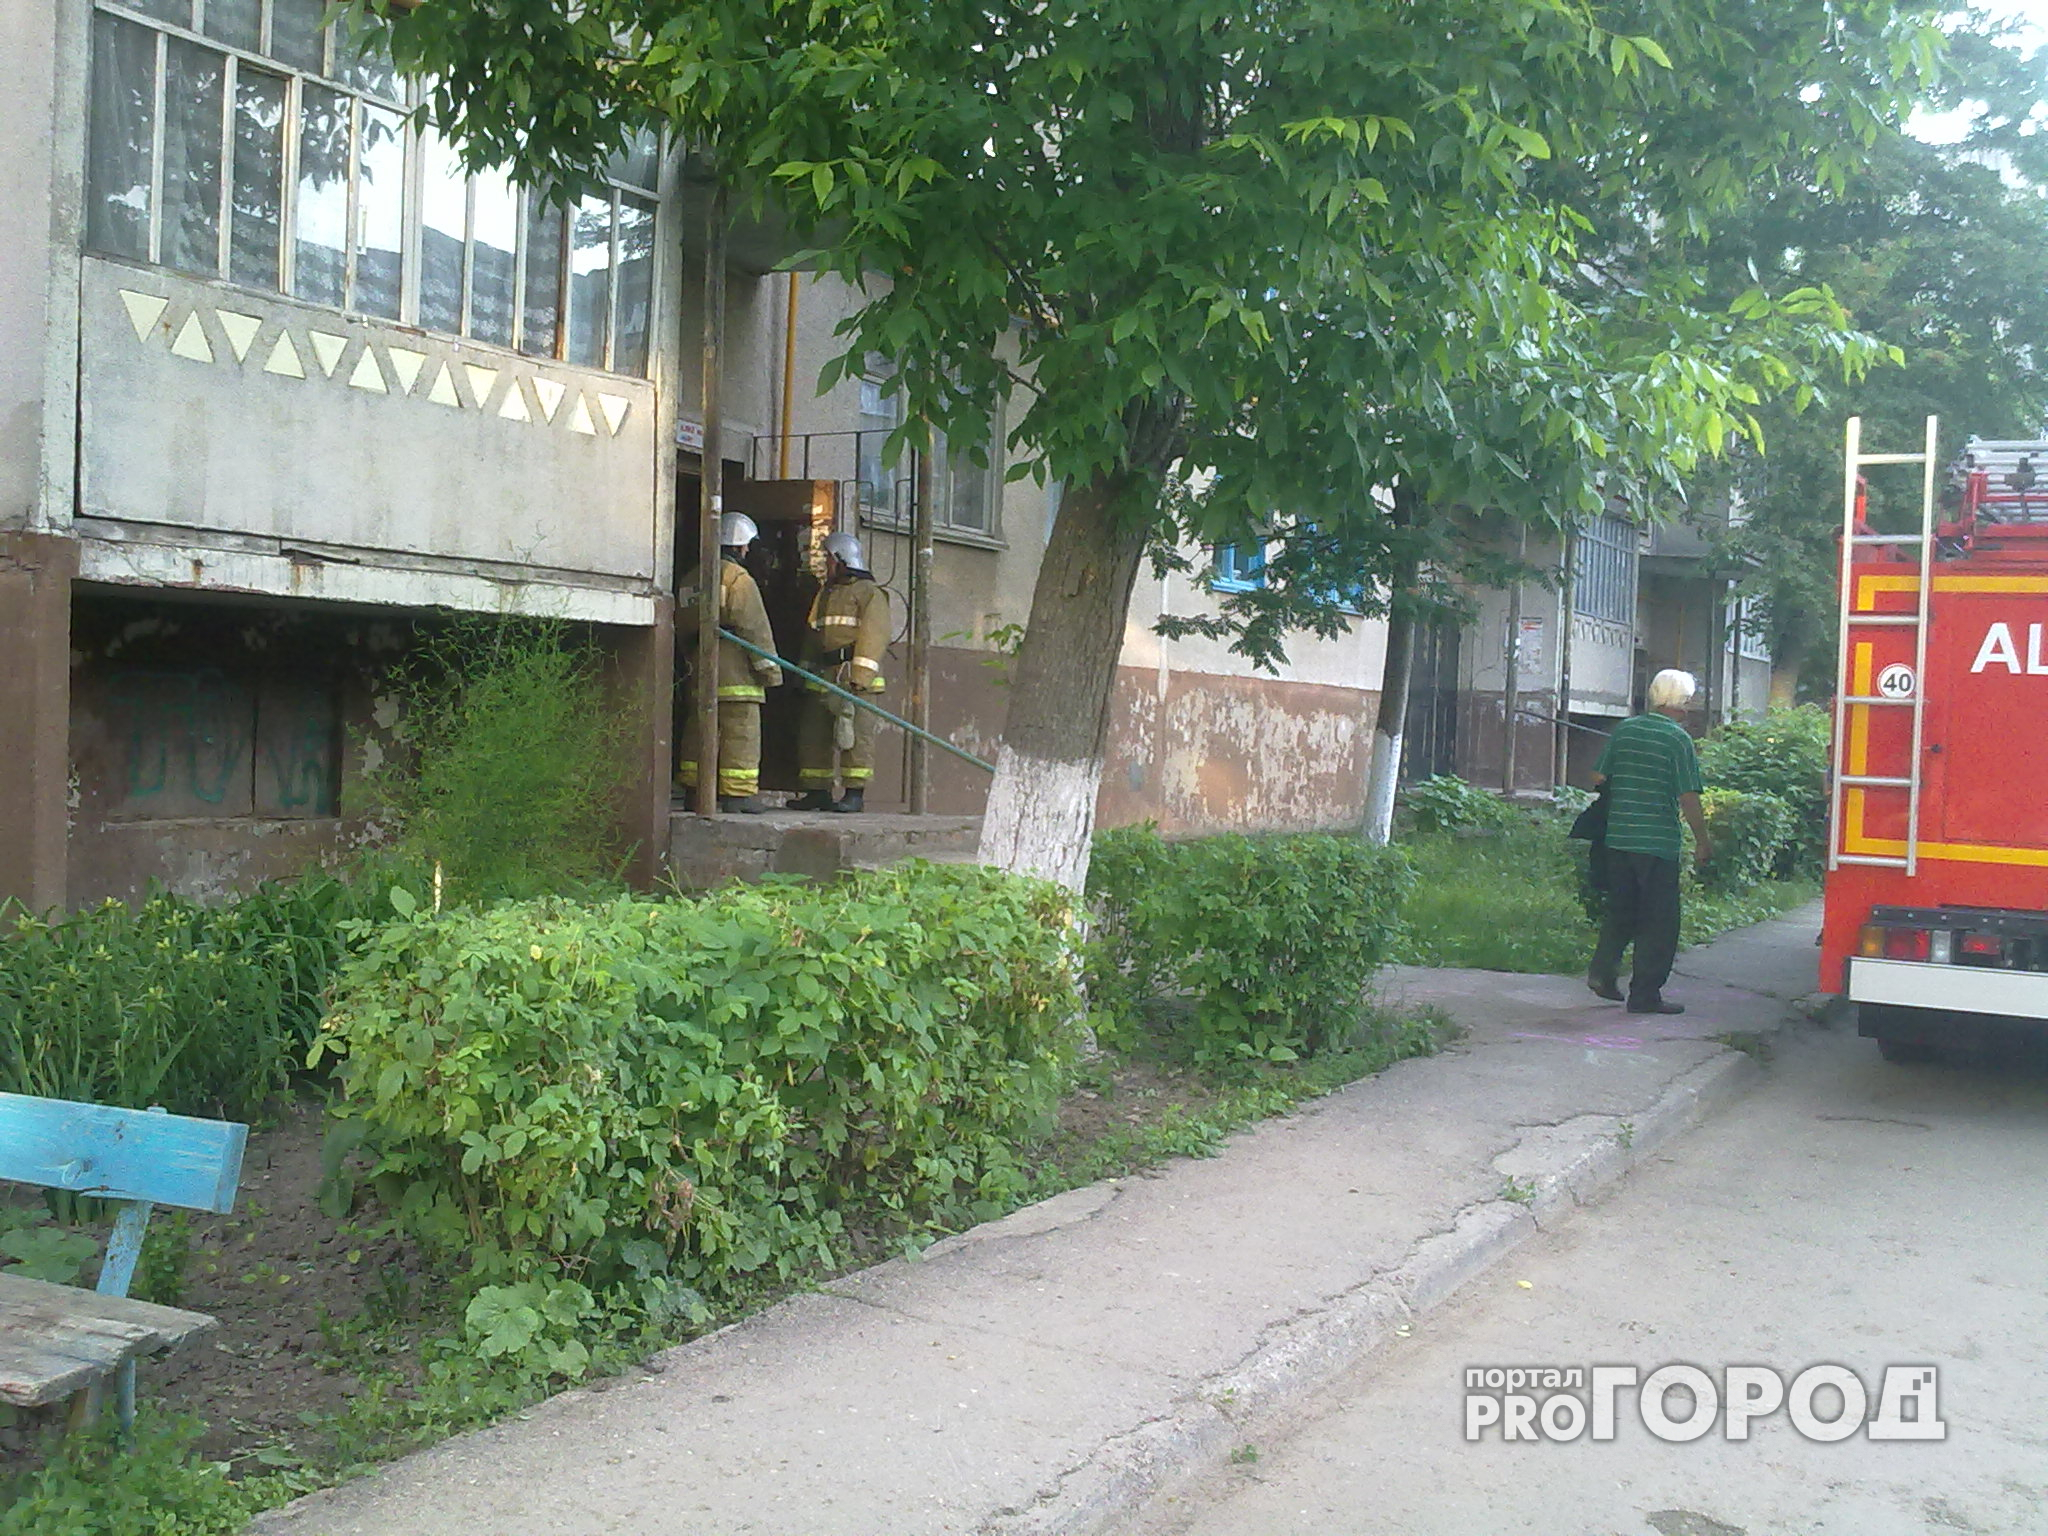 18 жителей нижегородской пятиэтажки экстренно эвакуировали среди ночи